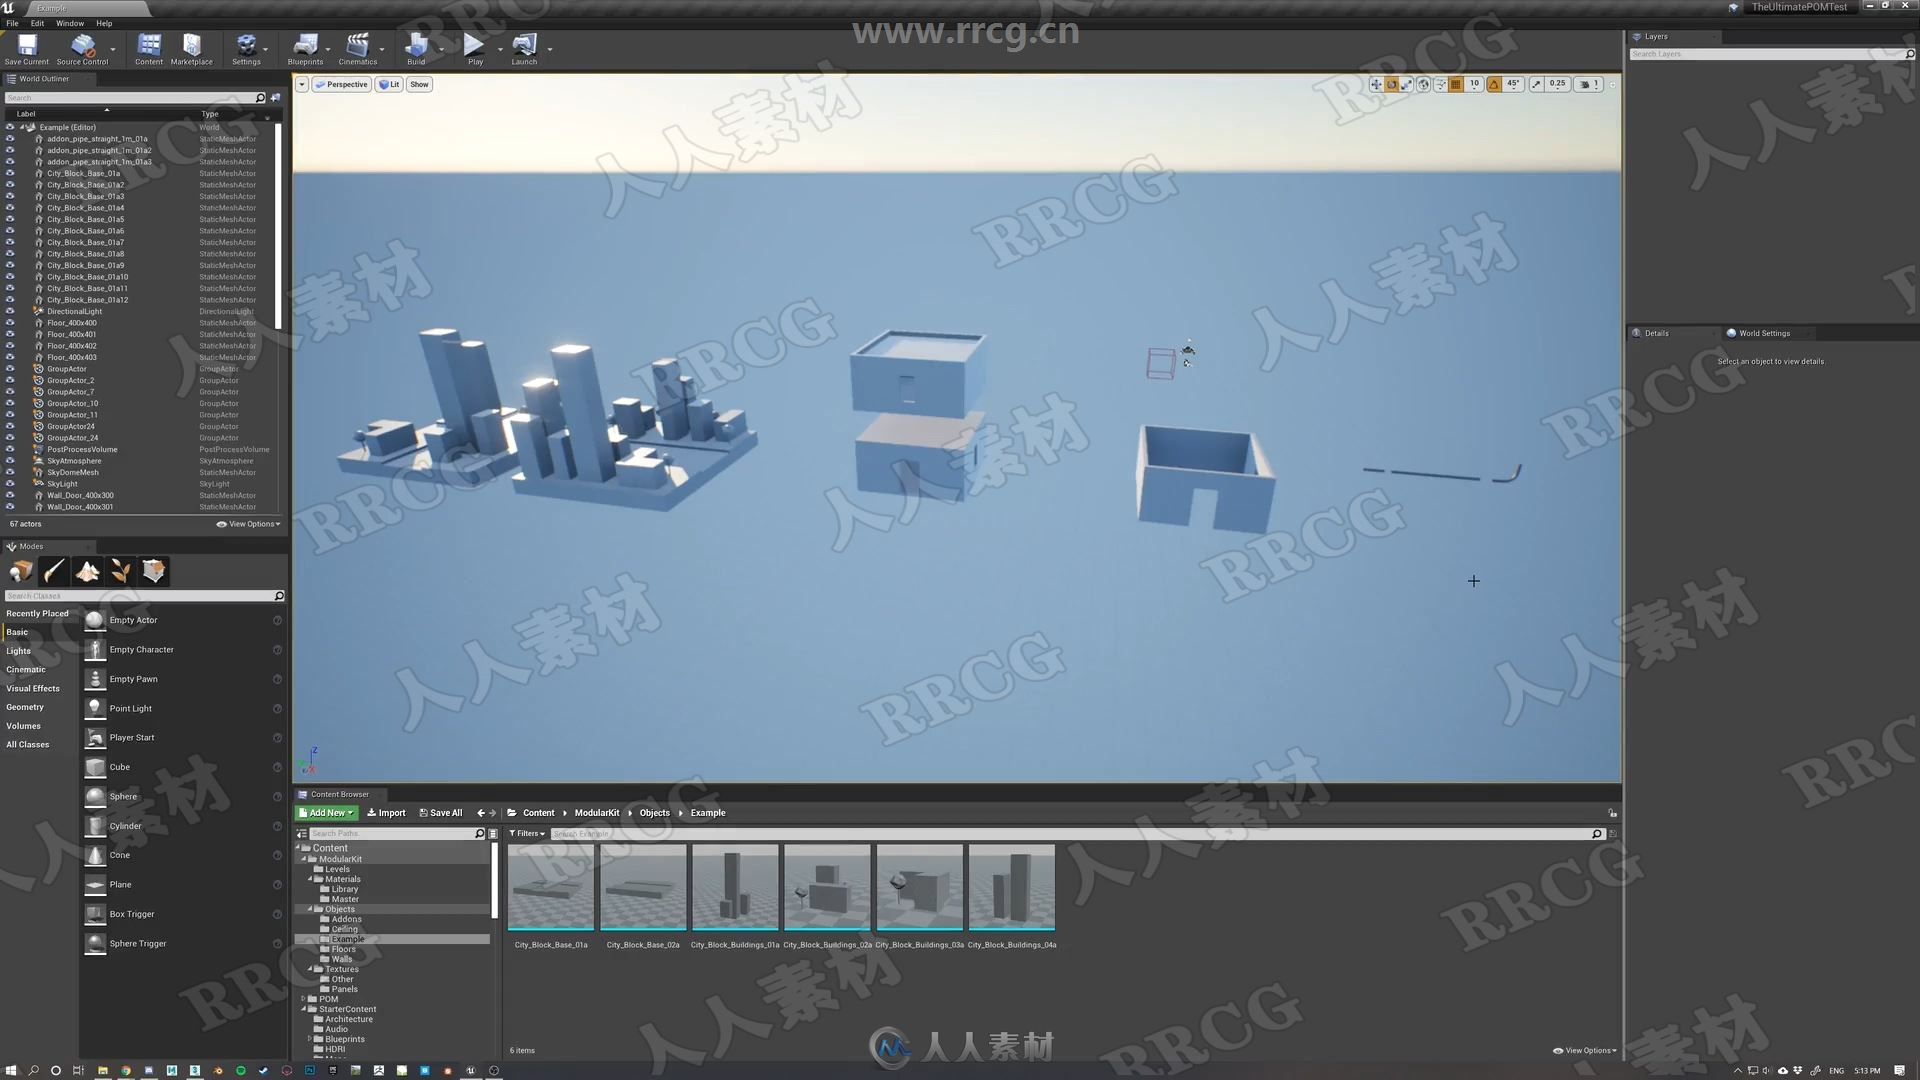 UE4游戏引擎模块化环境设计工作流程视频教程